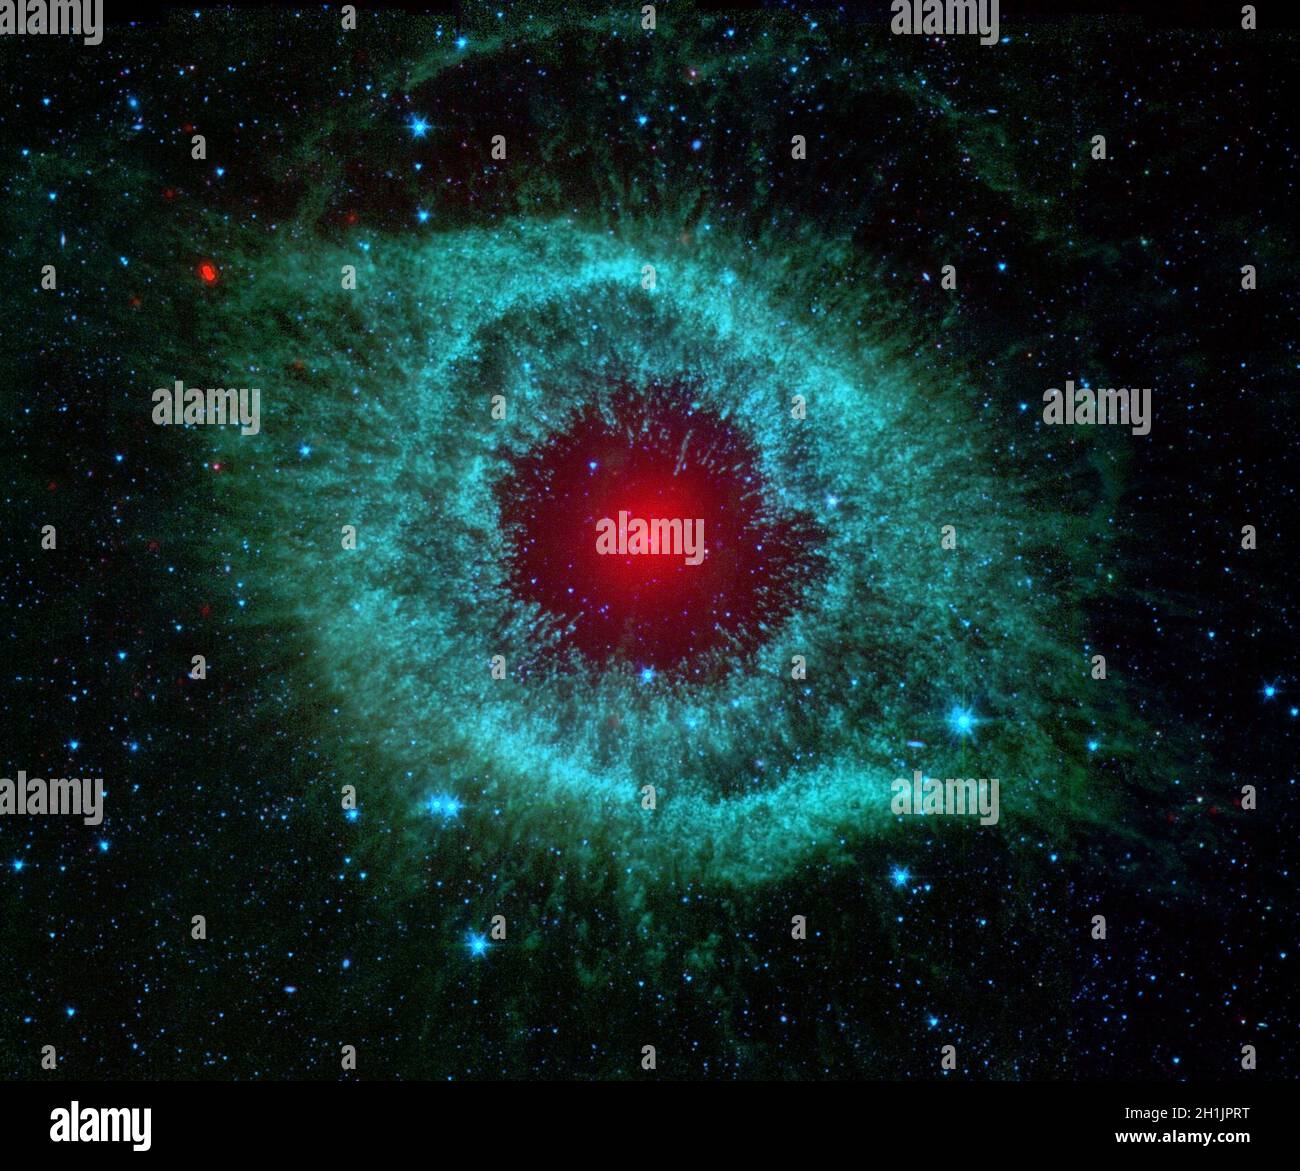 Dieses Infrarotbild des NASA-Weltraumteleskops Spitzer zeigt den Helix-Nebel, ein kosmisches Sternchen, das von Amateurastronomen wegen seiner lebendigen Farben und der Ähnlichkeit mit einem riesigen Auge oft fotografiert wurde. Eine optimierte und digital verbesserte Version eines NASA/ESA-Bildes. Quelle: NASA/ESA Stockfoto